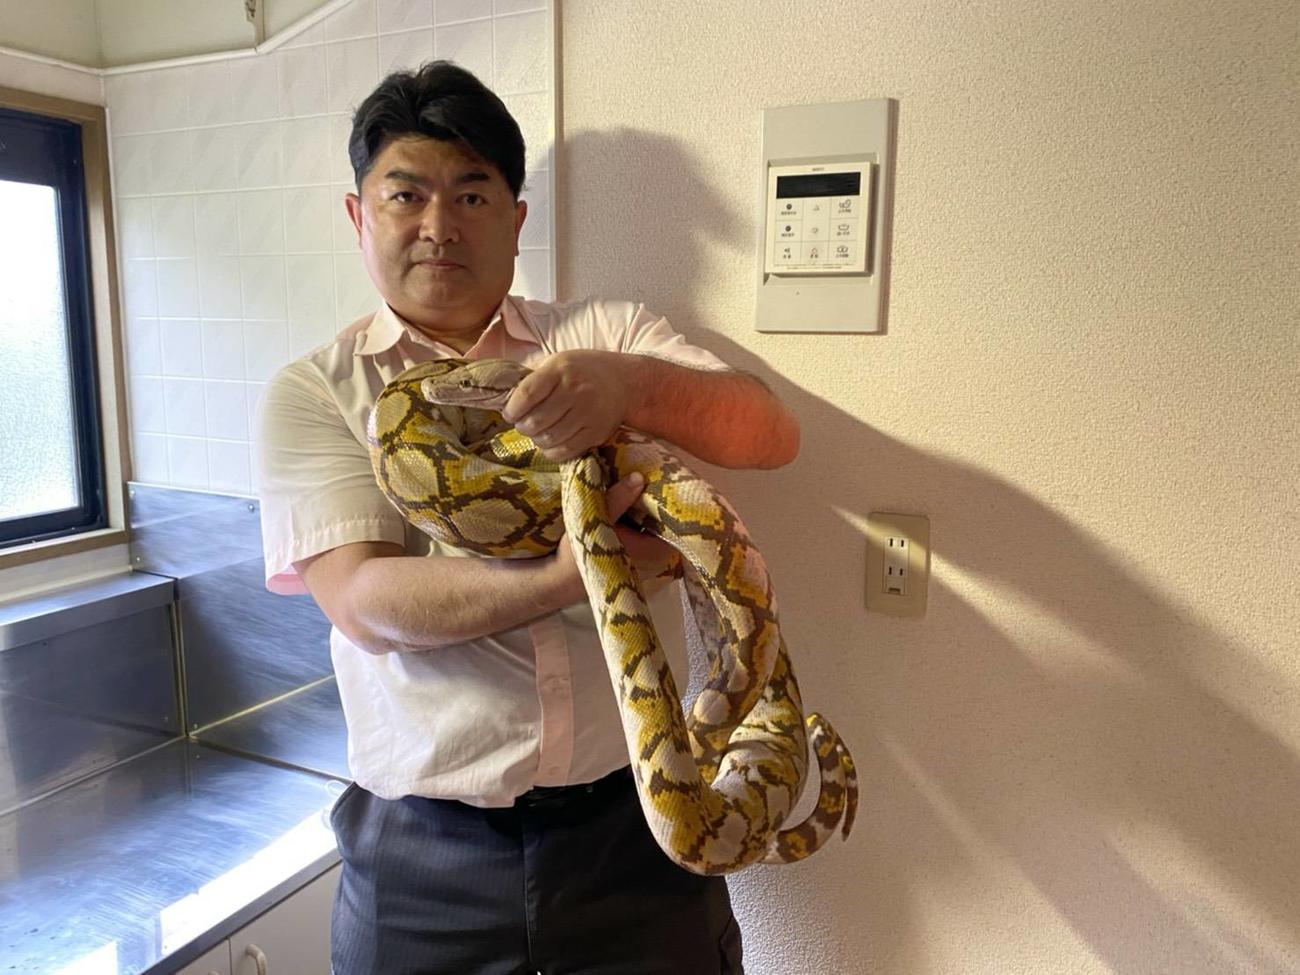 日本爬虫類両生類協会の白輪剛史理事長は捕獲した蛇を優しく抱きかかえた（白輪氏提供）